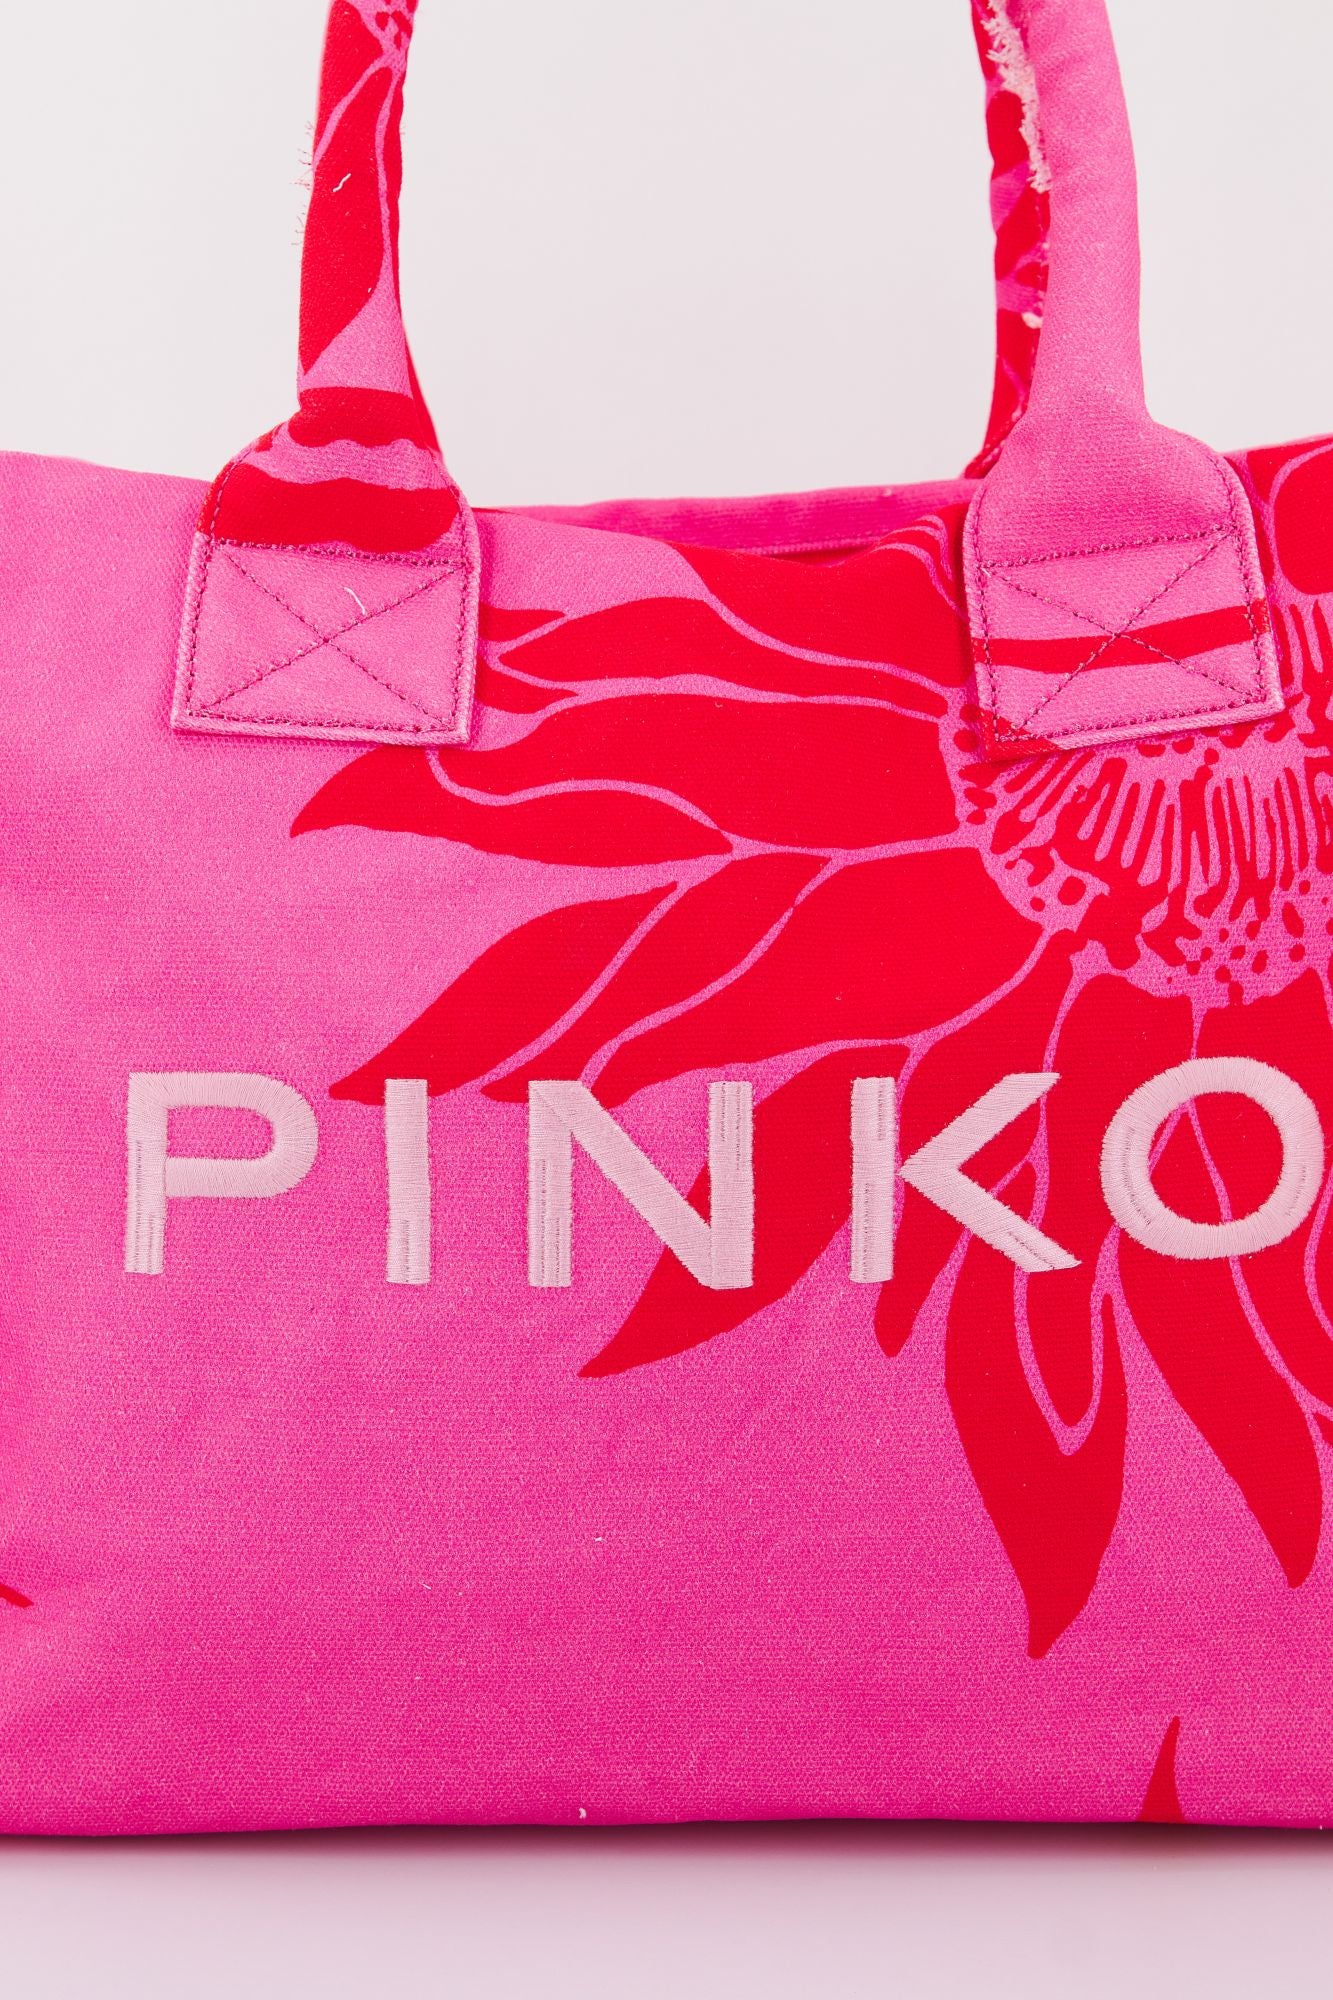 PINKO BEACH SHOPPING en color ROSA (4)